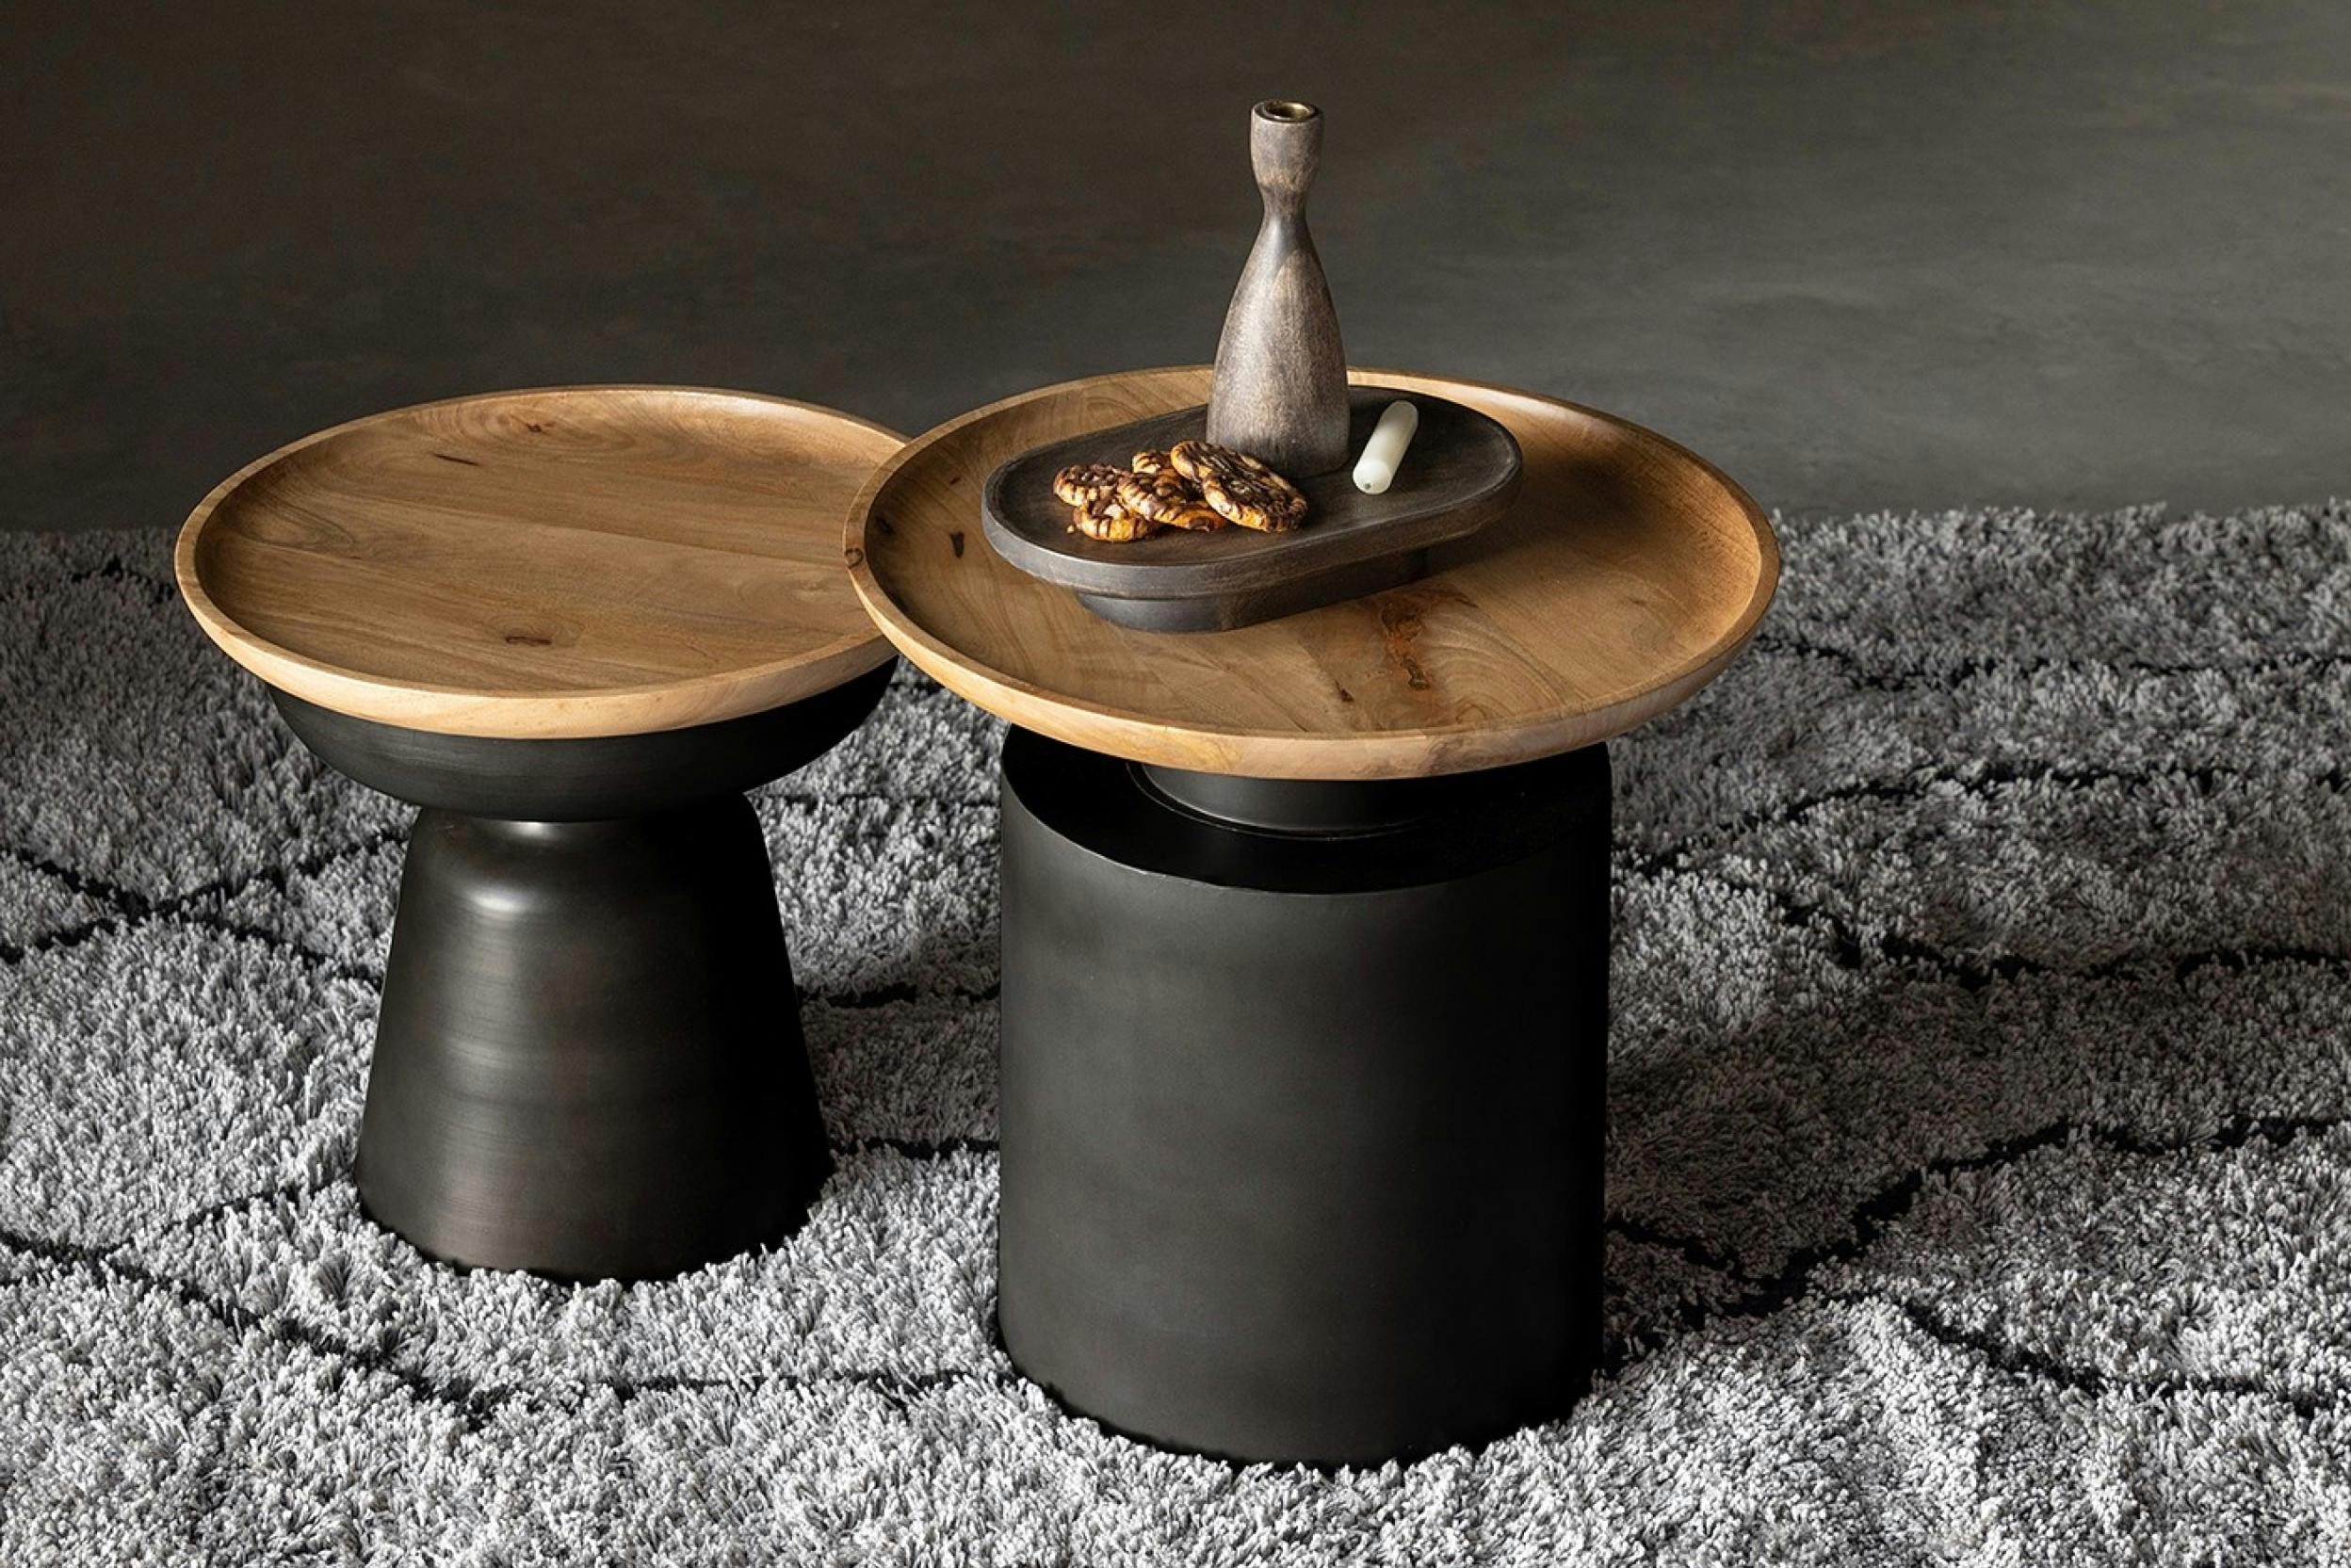 Zwei runde schwarze Beistelltische in verschiedenen Größen, jeweils mit einer Holzplatte